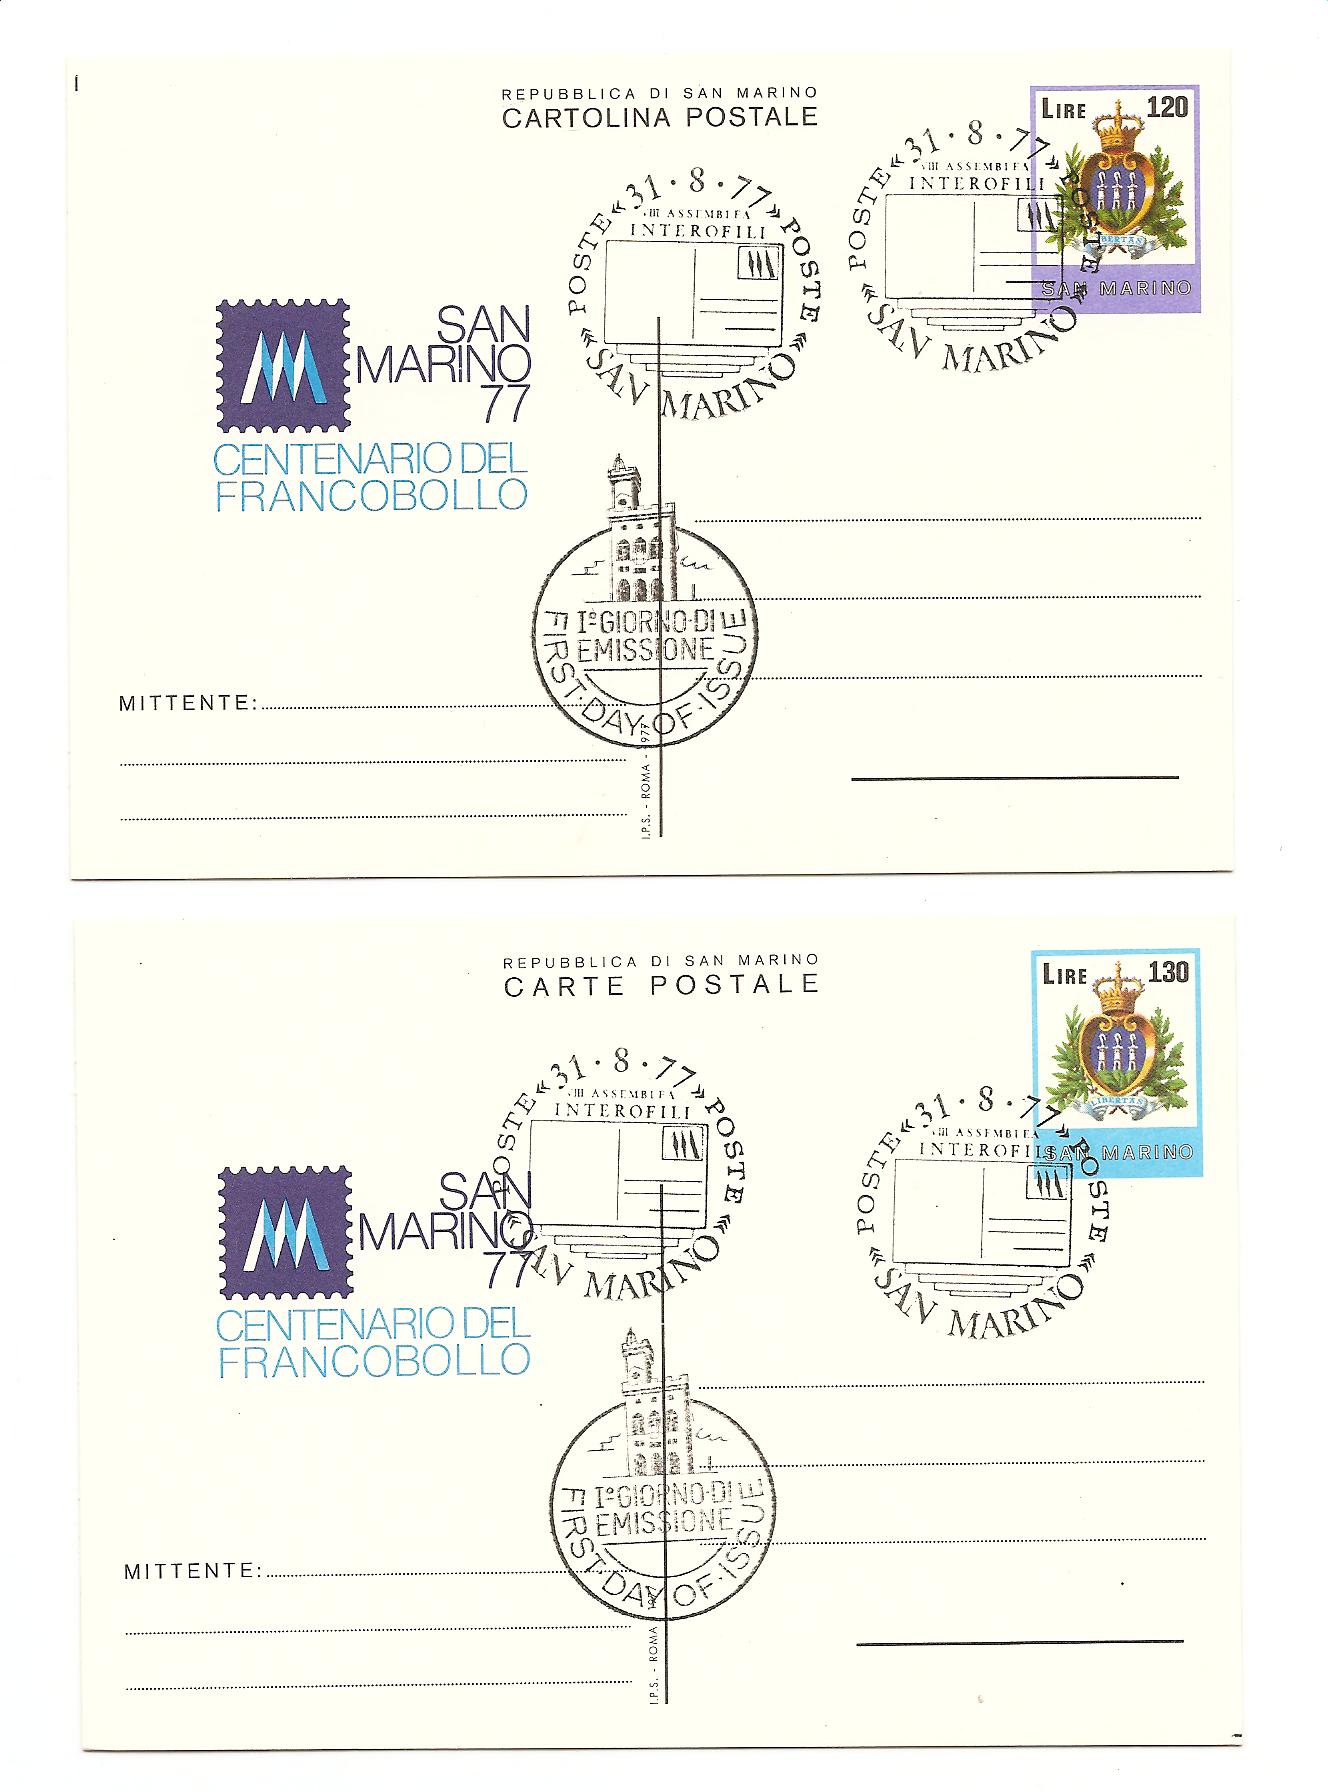 23764 - San Marino - 2 cartoline postali con annullo speciale FDC: Centenario del francobollo